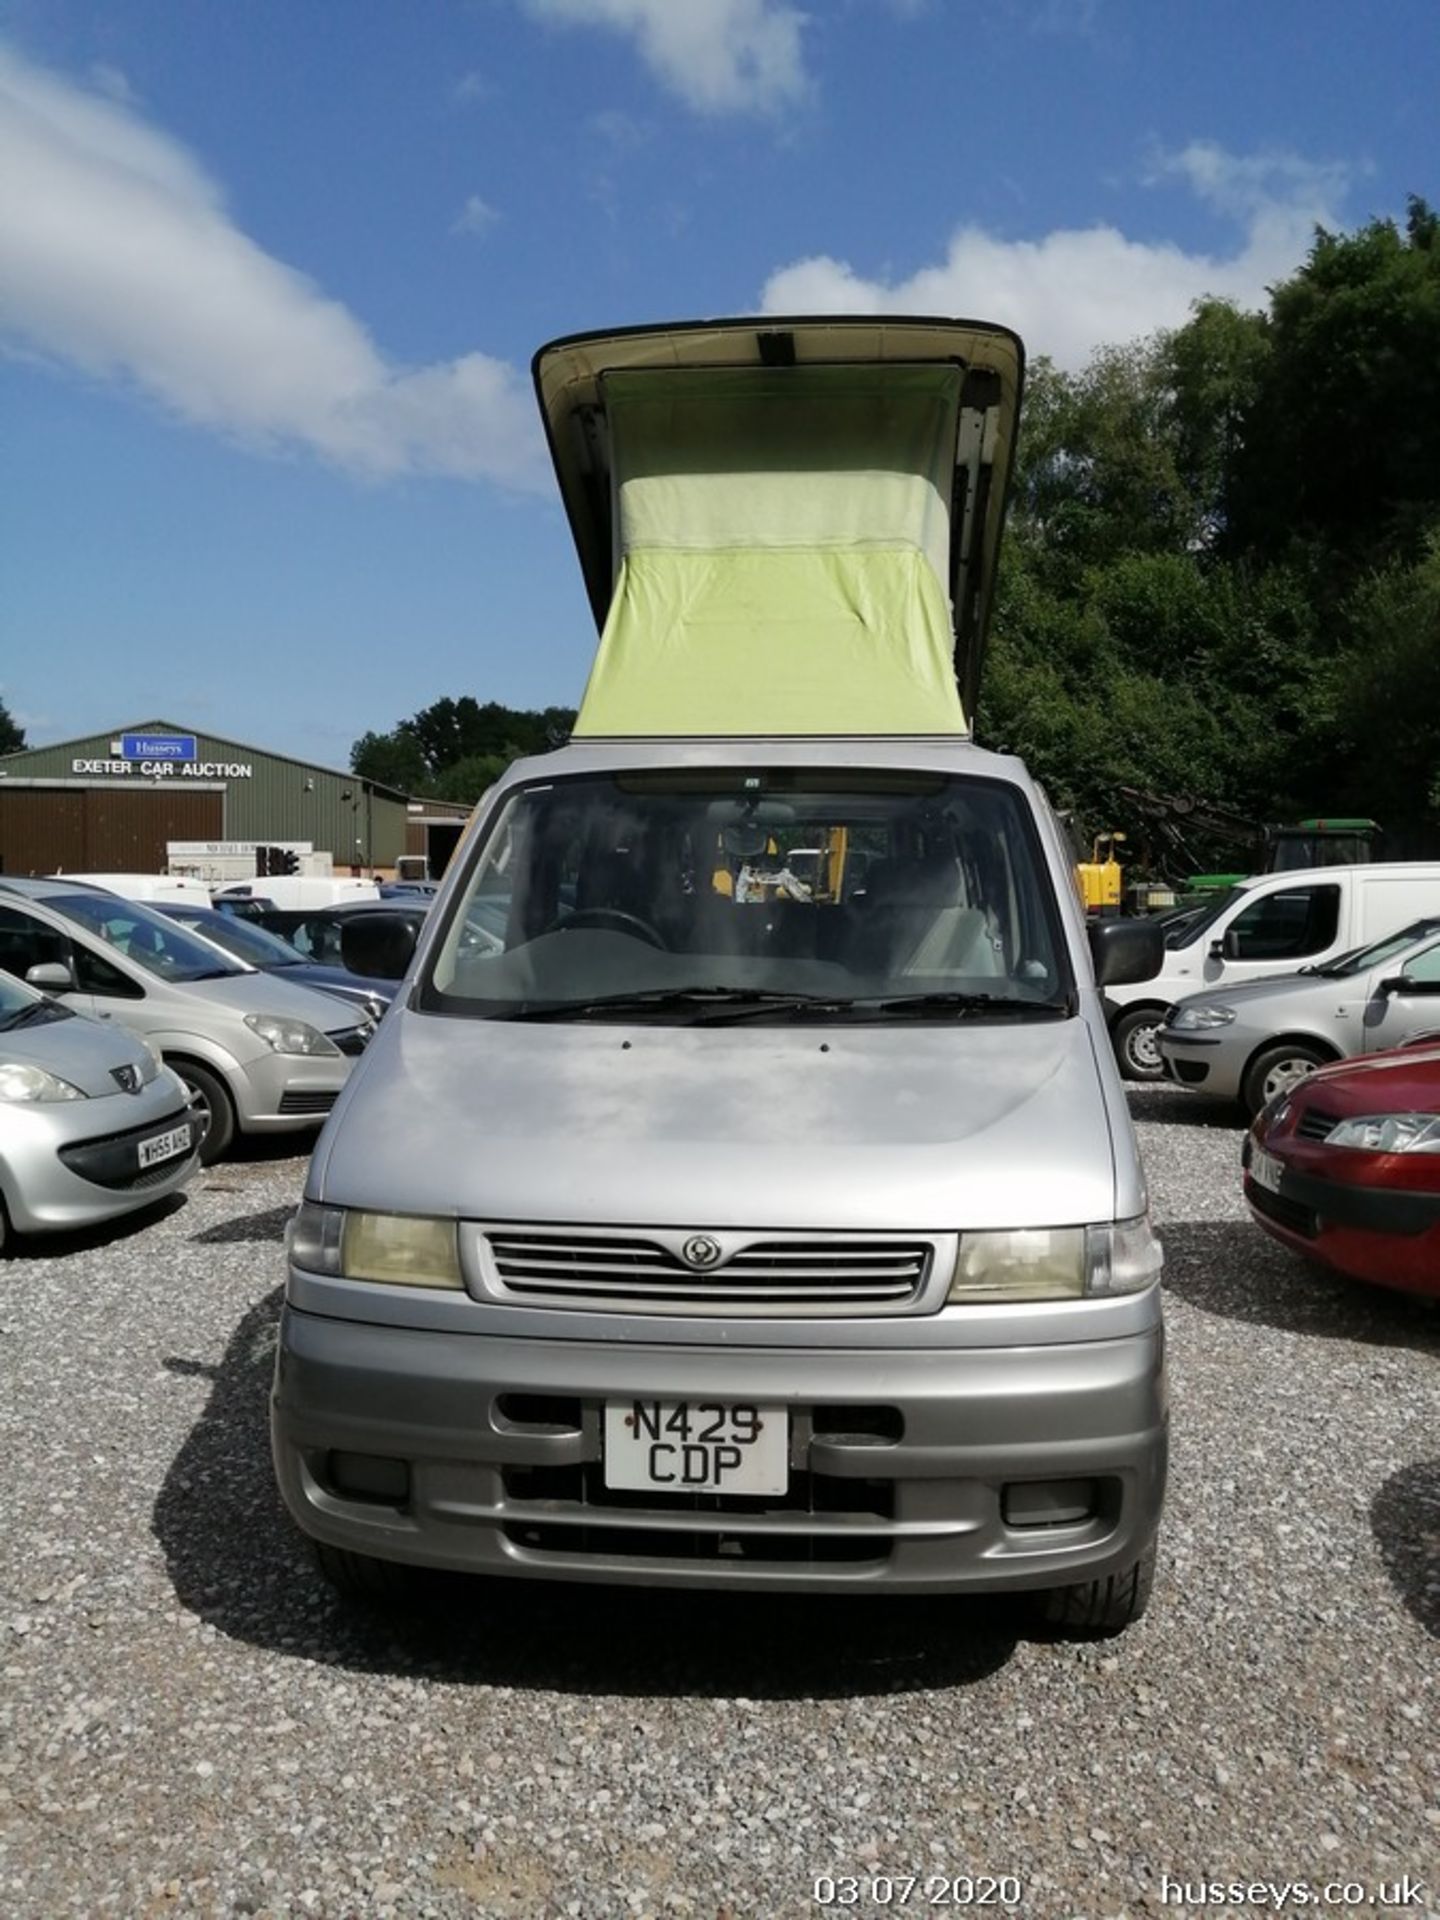 1995 Mazda Bongo Camper Van - Image 5 of 14